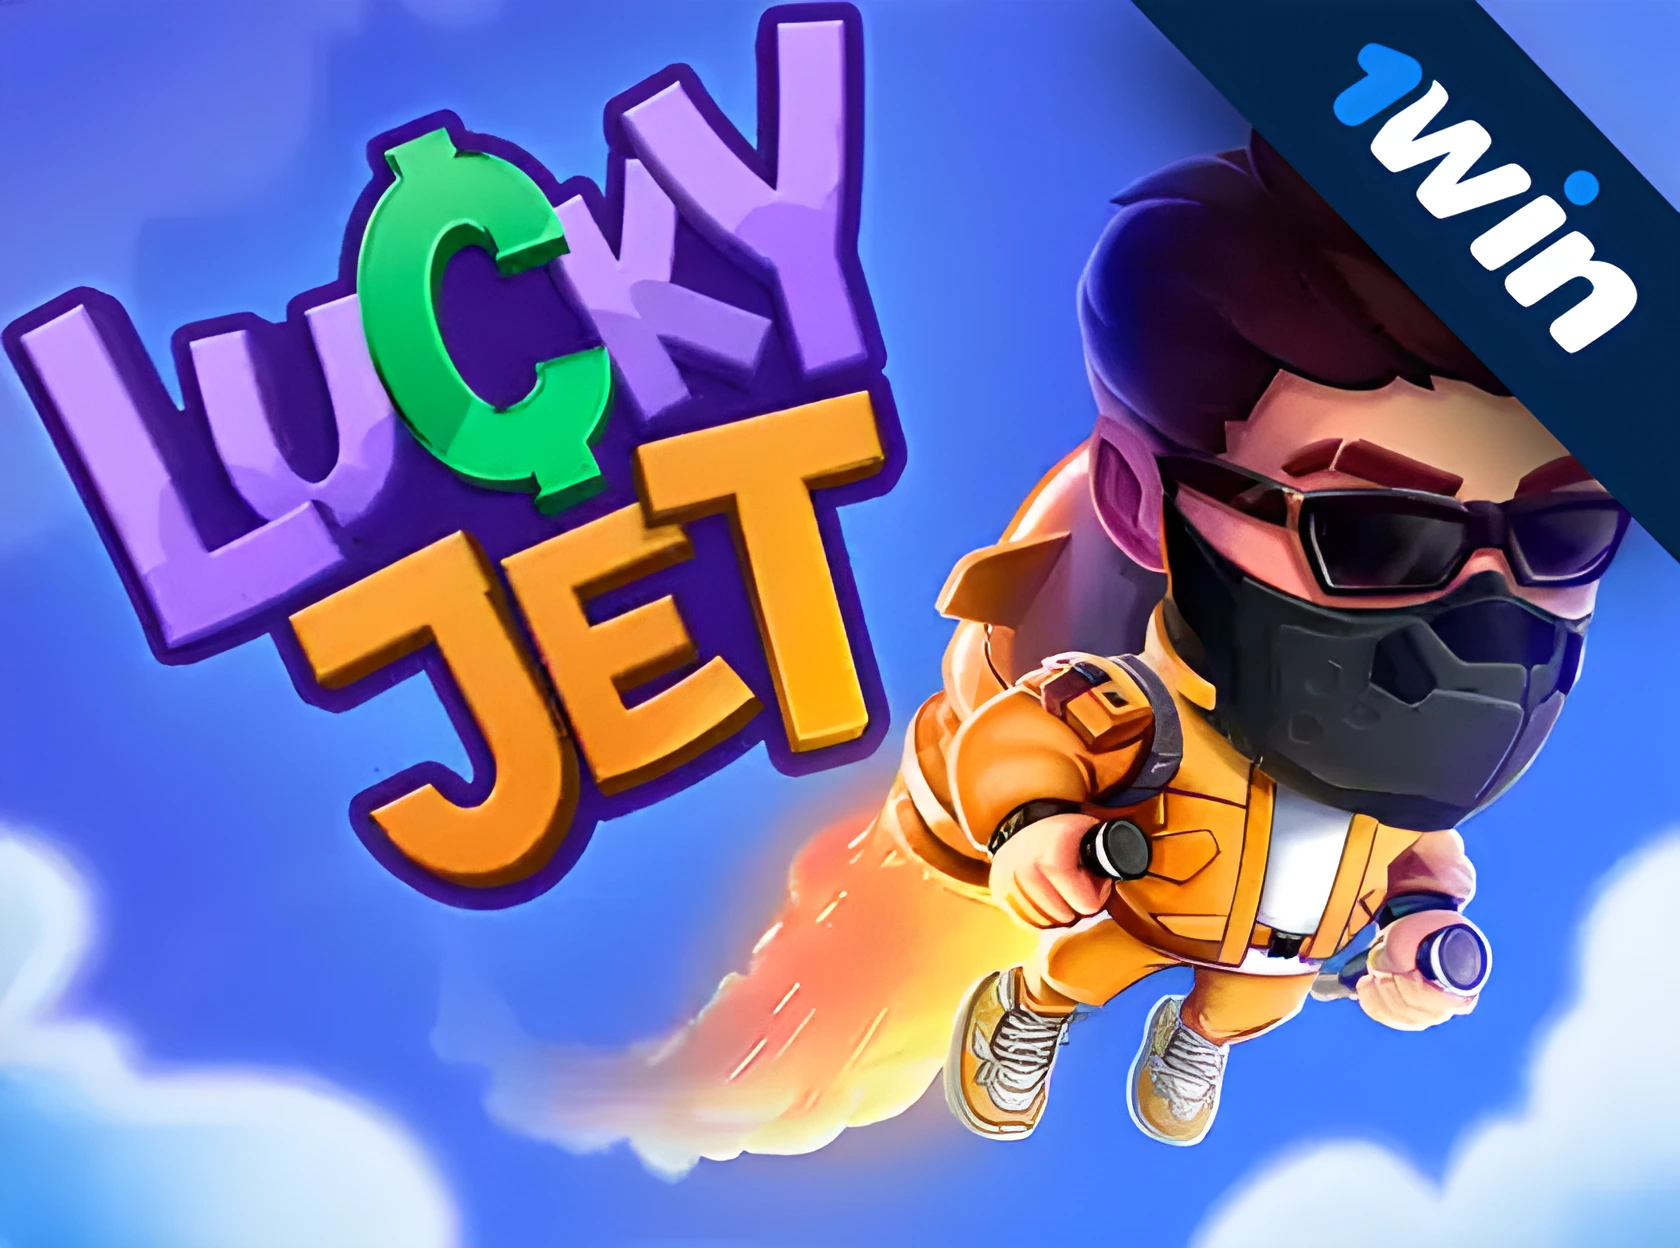 Lucky Jet - рдСрдирд▓рд╛рдЗрди рдЦреЗрд▓рдирд╛